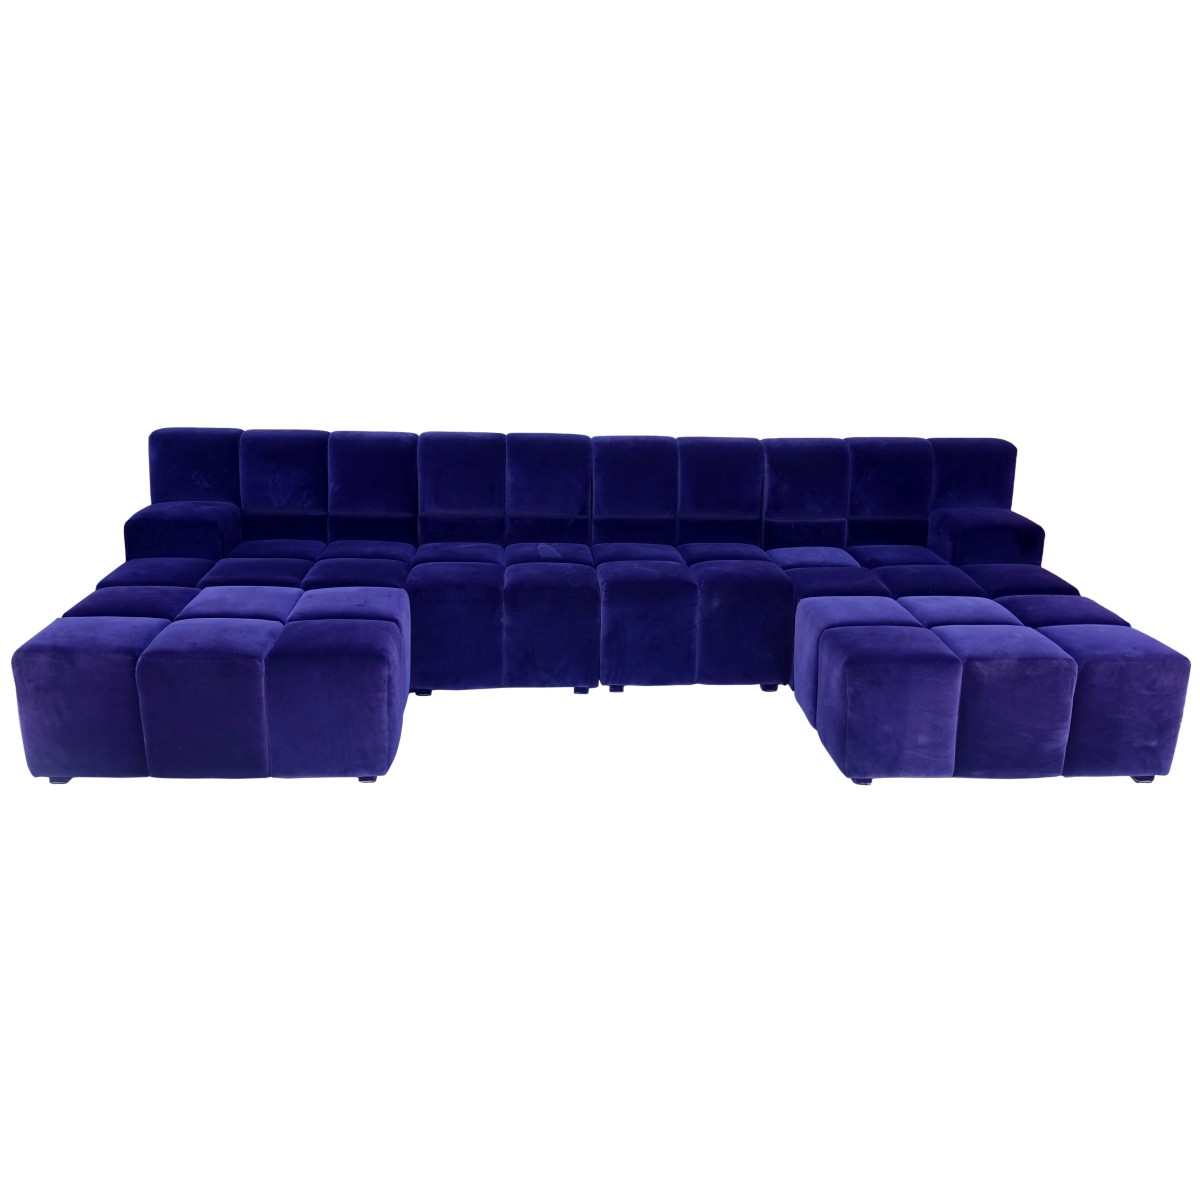 6 pc Modern Velvet Sectional Sofa - Image 3 of 7